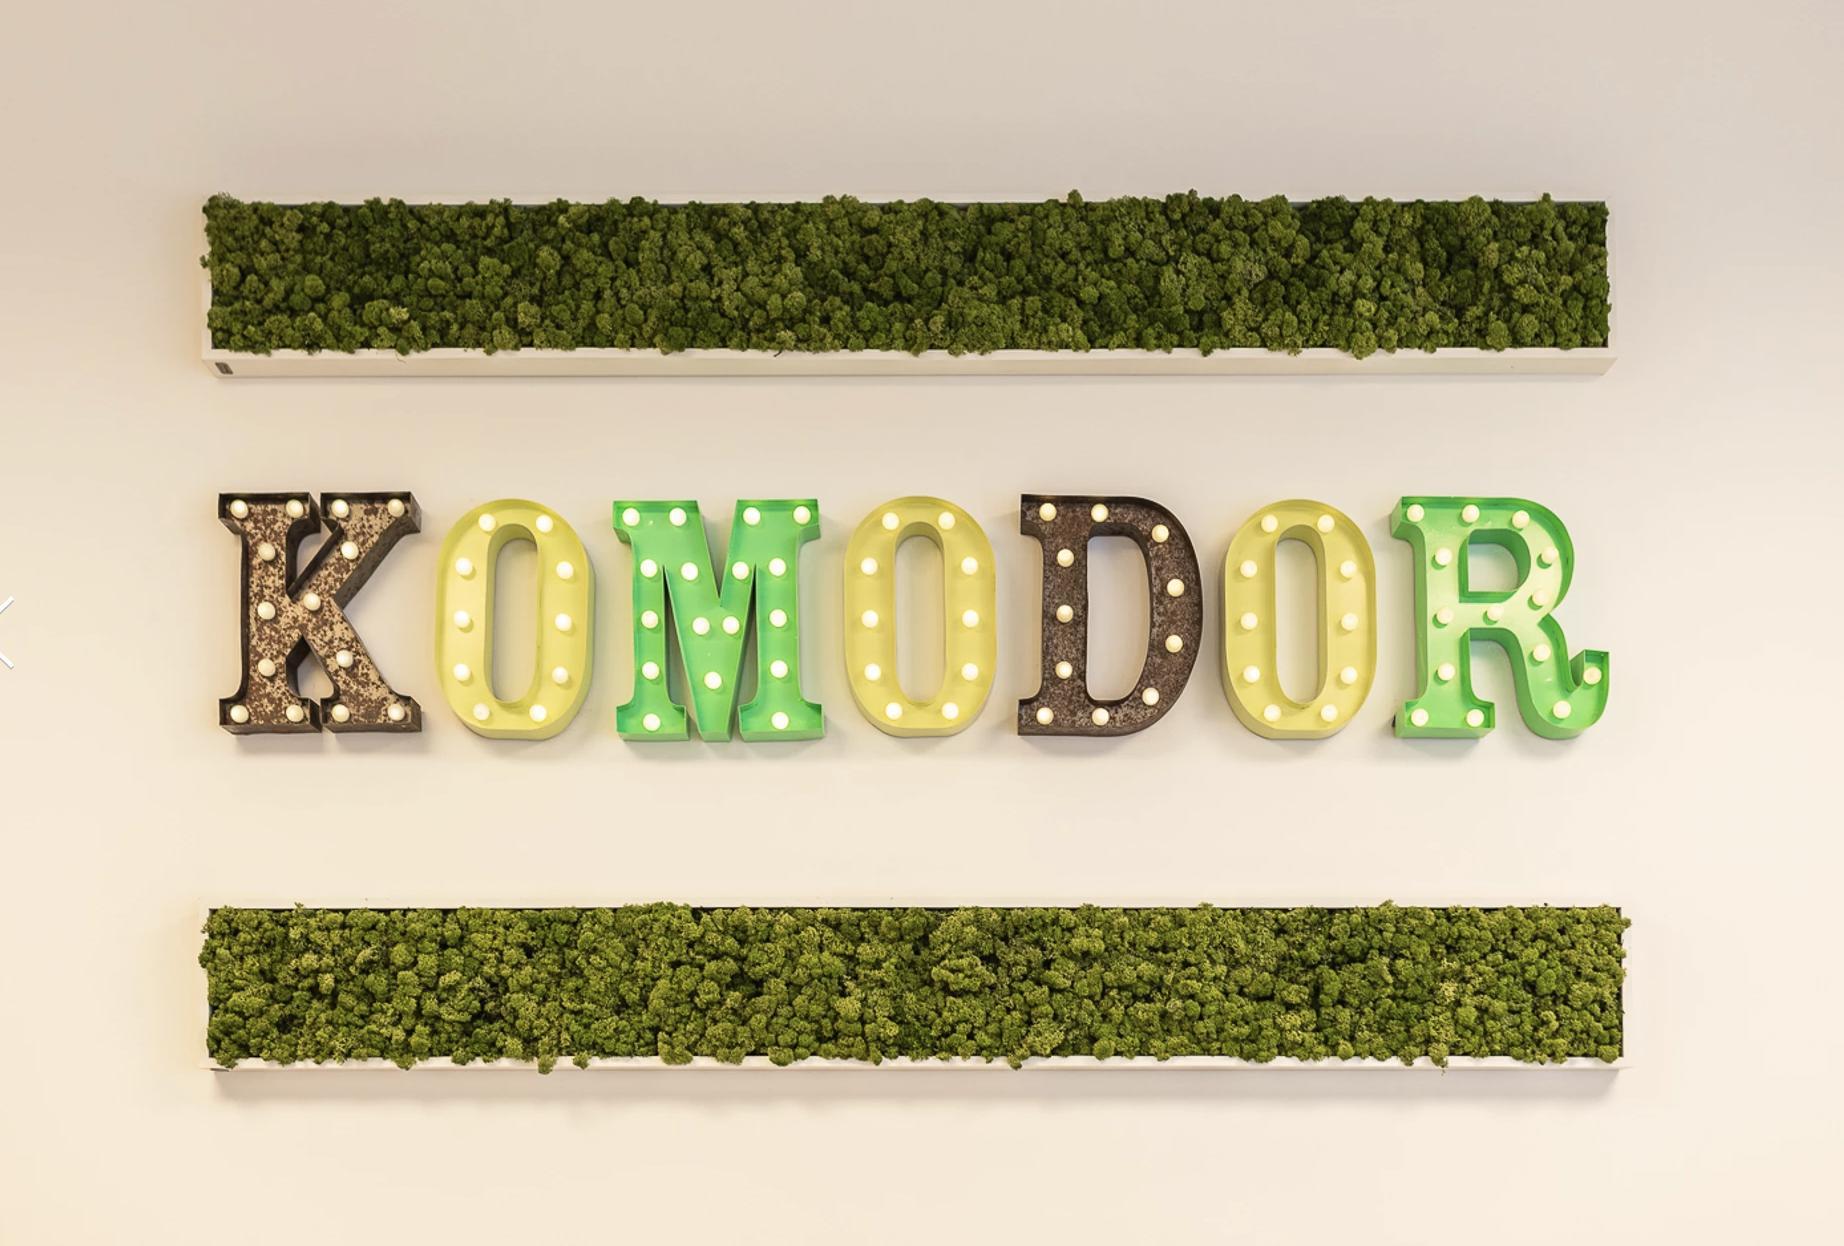 Exterior of Komodor